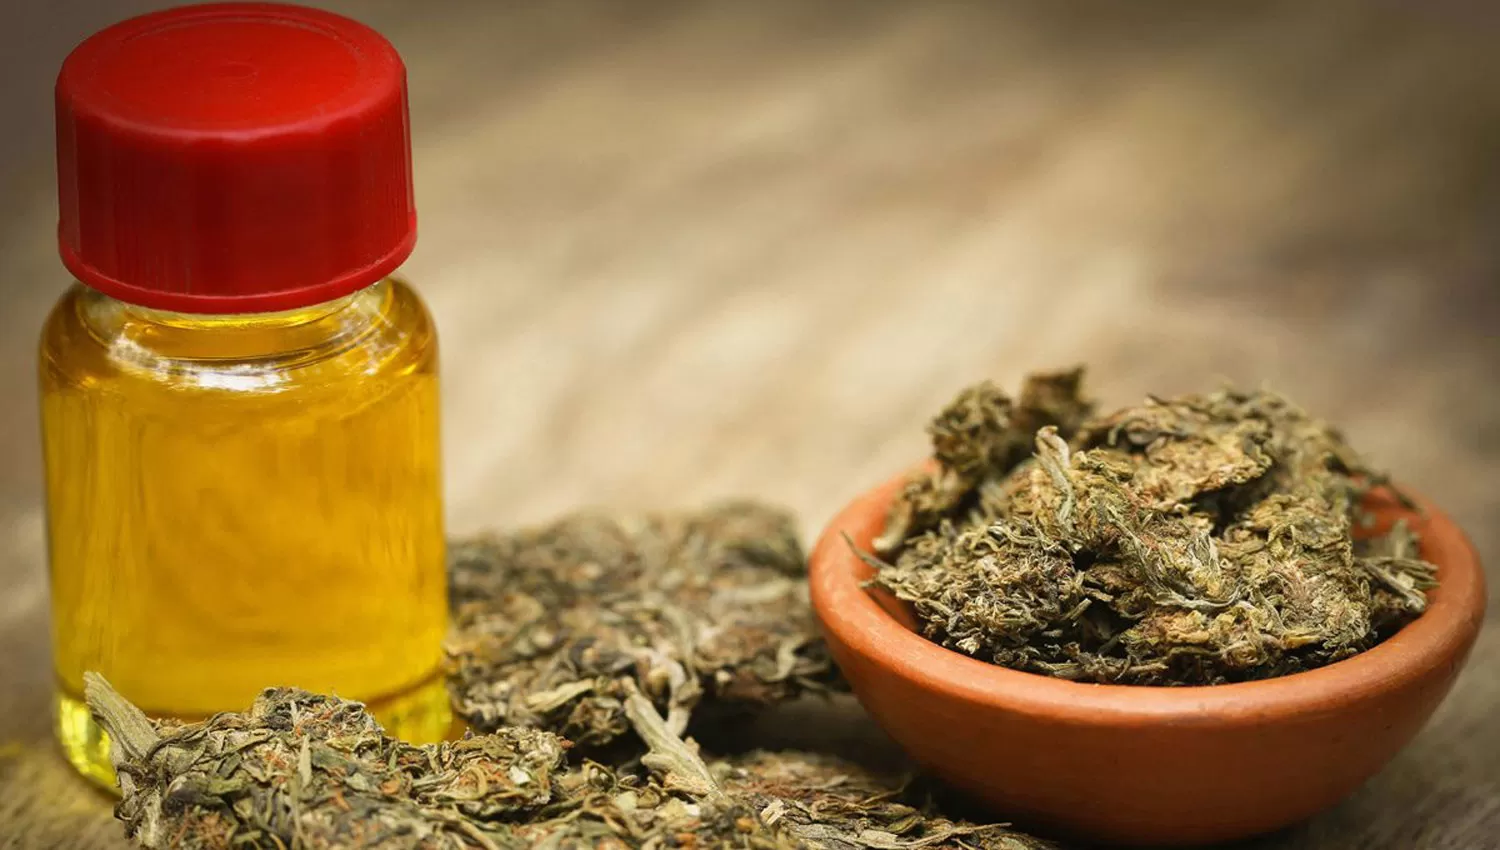 DERIVADOS. El aceite de cannabis ya se comercializa de manera artesanal en toda Latinoamérica.